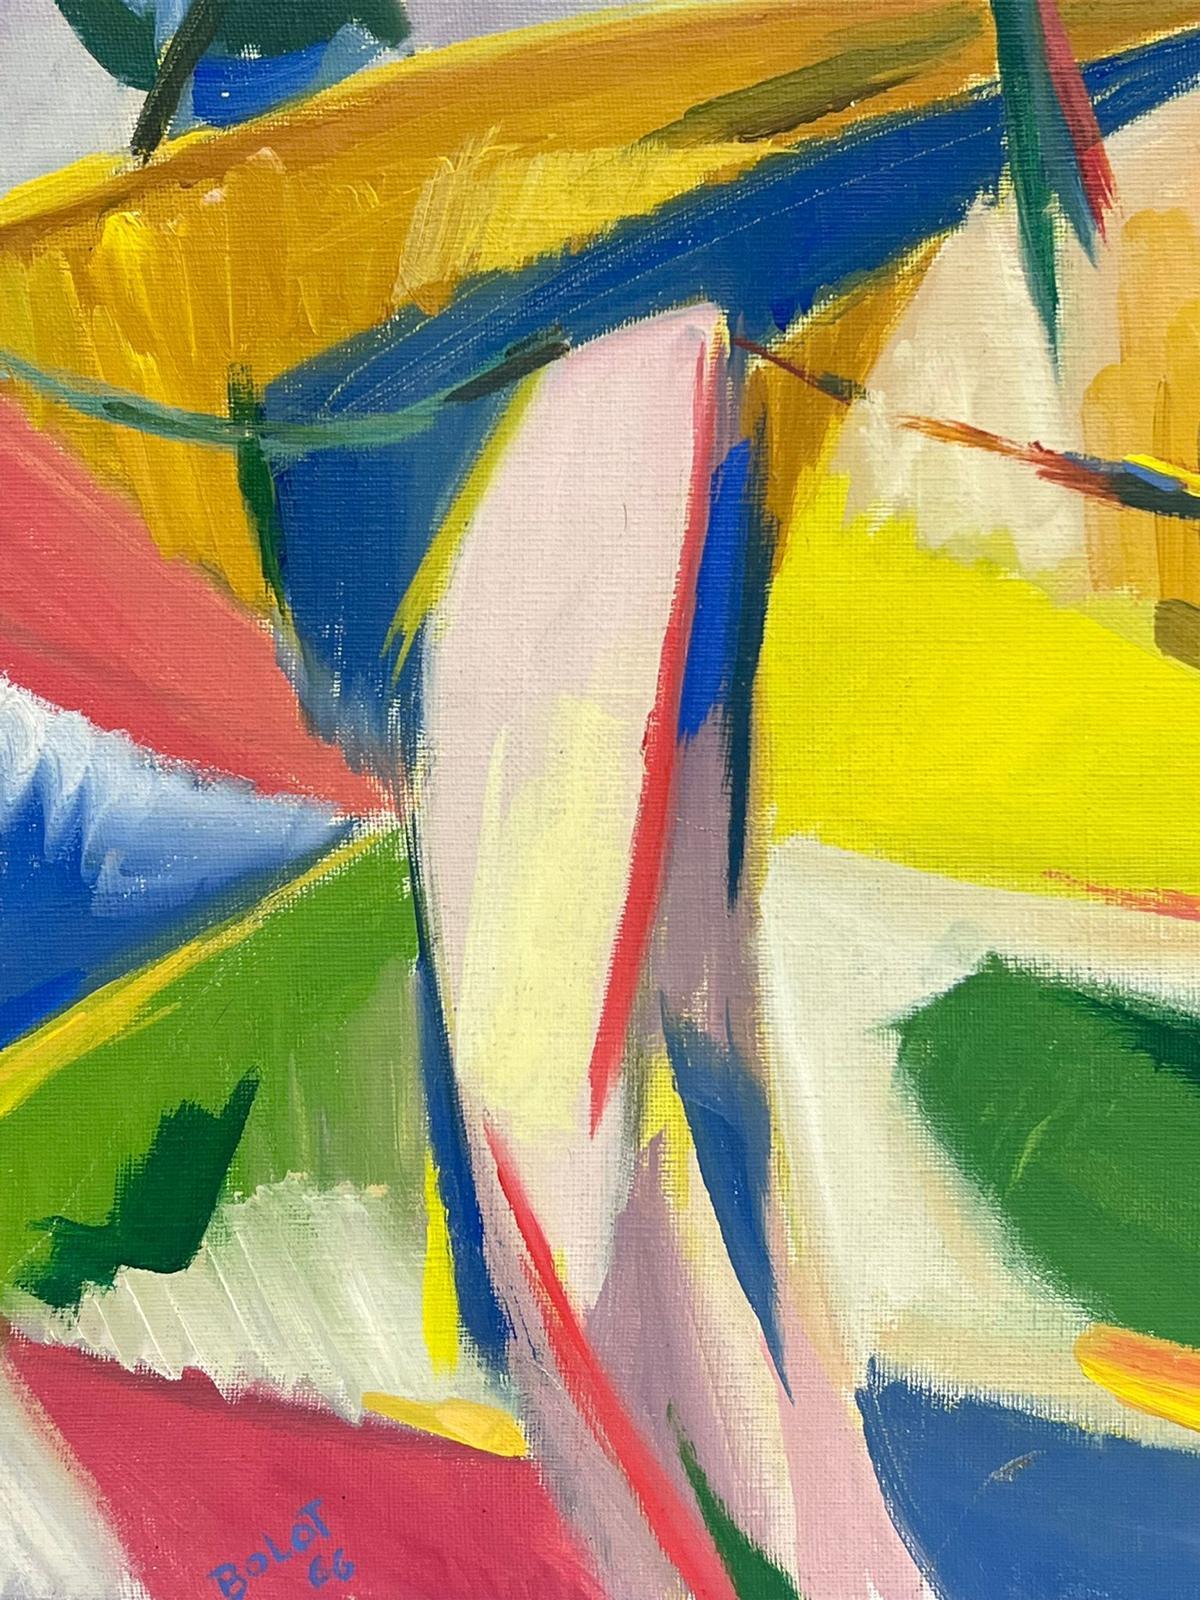 Kubistische Landschaft
von Paul-Louis Bolot (Französisch 1918-2003)
verso signiert und datiert 66
Öl auf Leinwand
Leinwand: 21,5 x 16 Zoll
Original-Ölgemälde
Zustand: sehr gut und gesund

Provenienz: Alle Gemälde, die wir von diesem Künstler